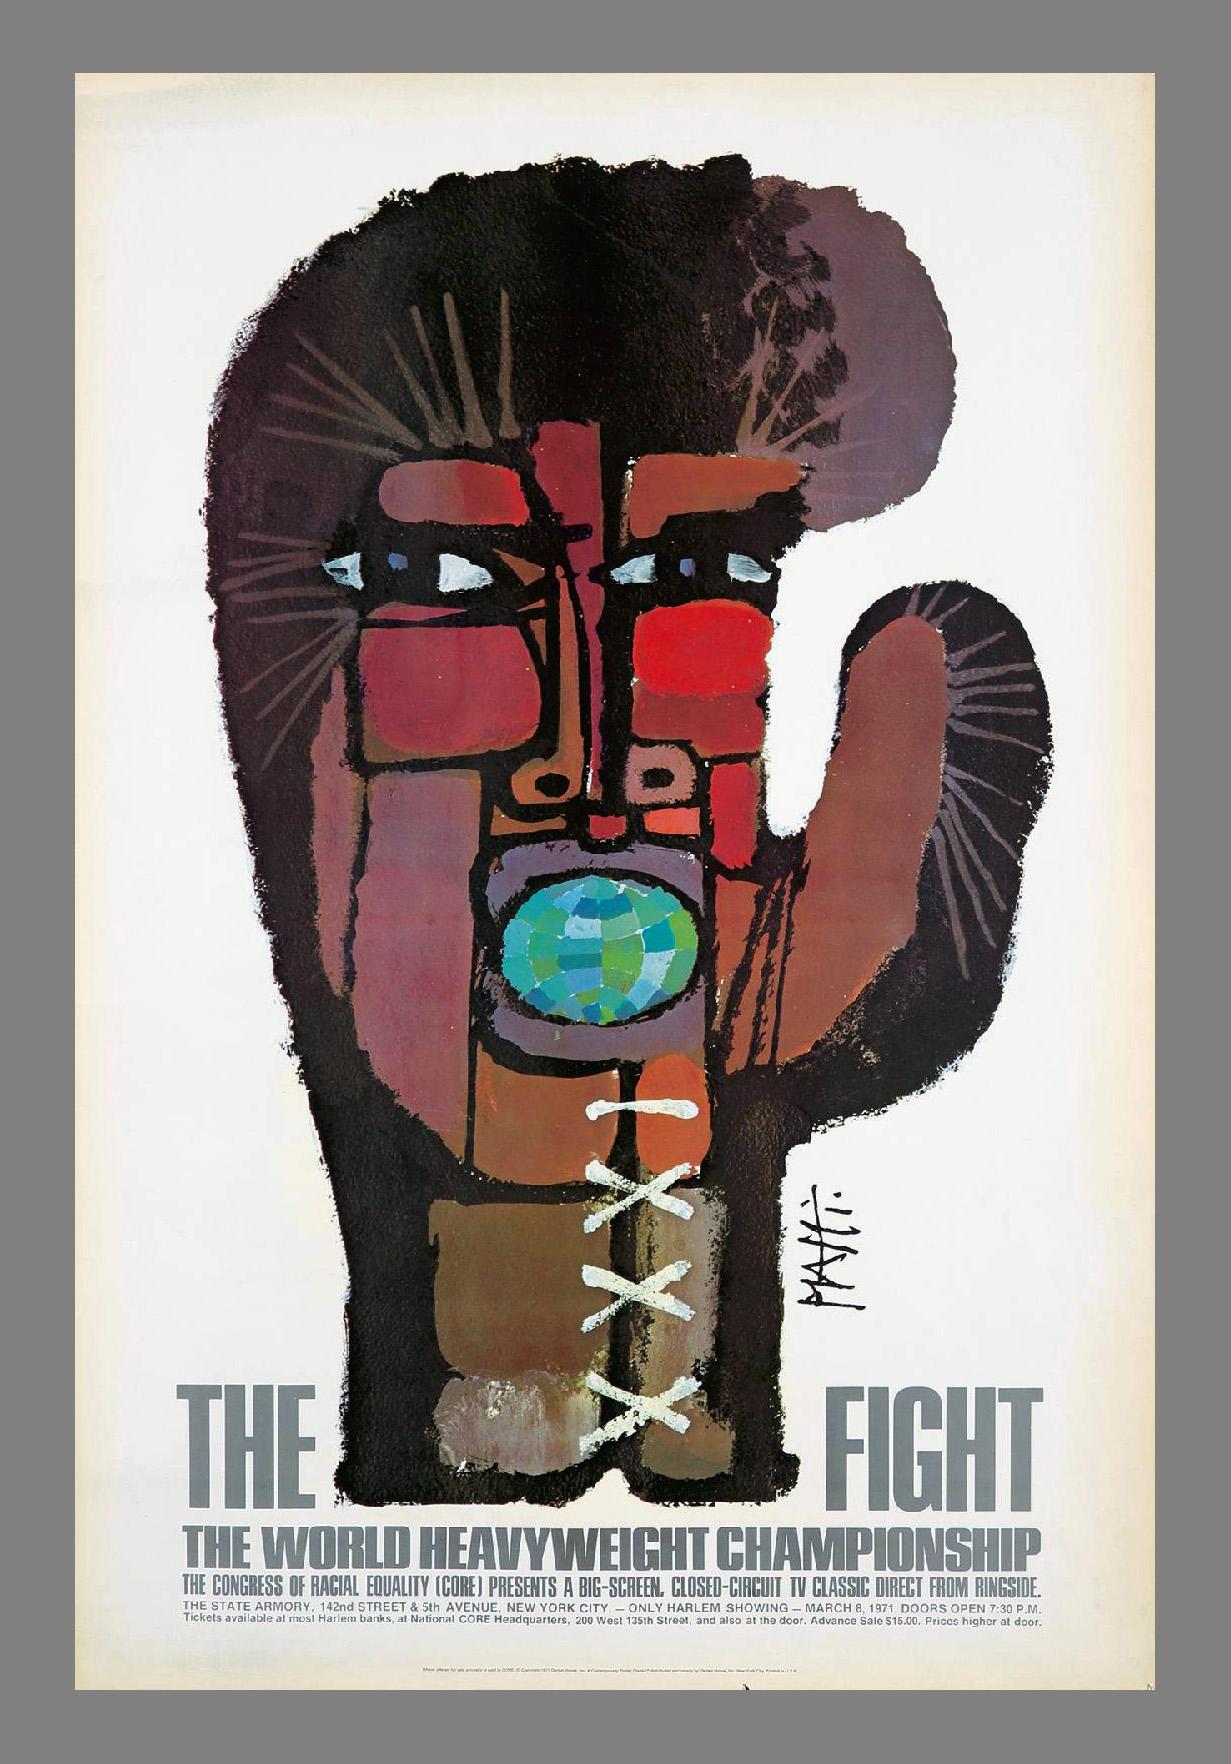 Vintage Muhammad Ali, Joe Frazier Boxing poster: Celestino Piatti 'The Fight'  1